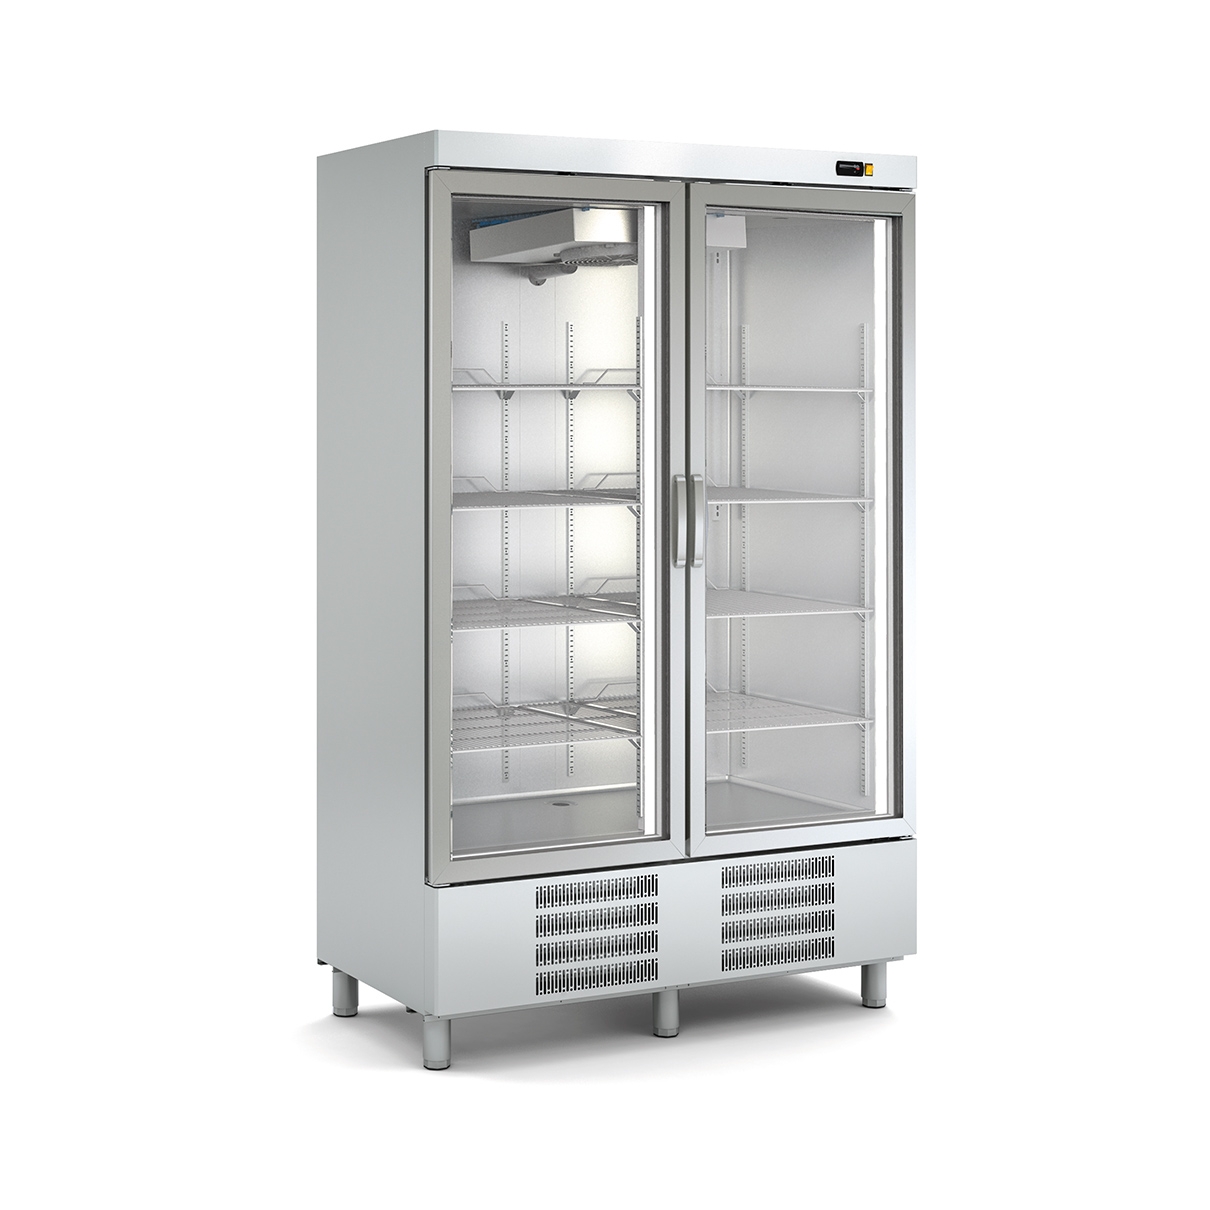 SNACK Refrigerated Cabinet ASVD-140